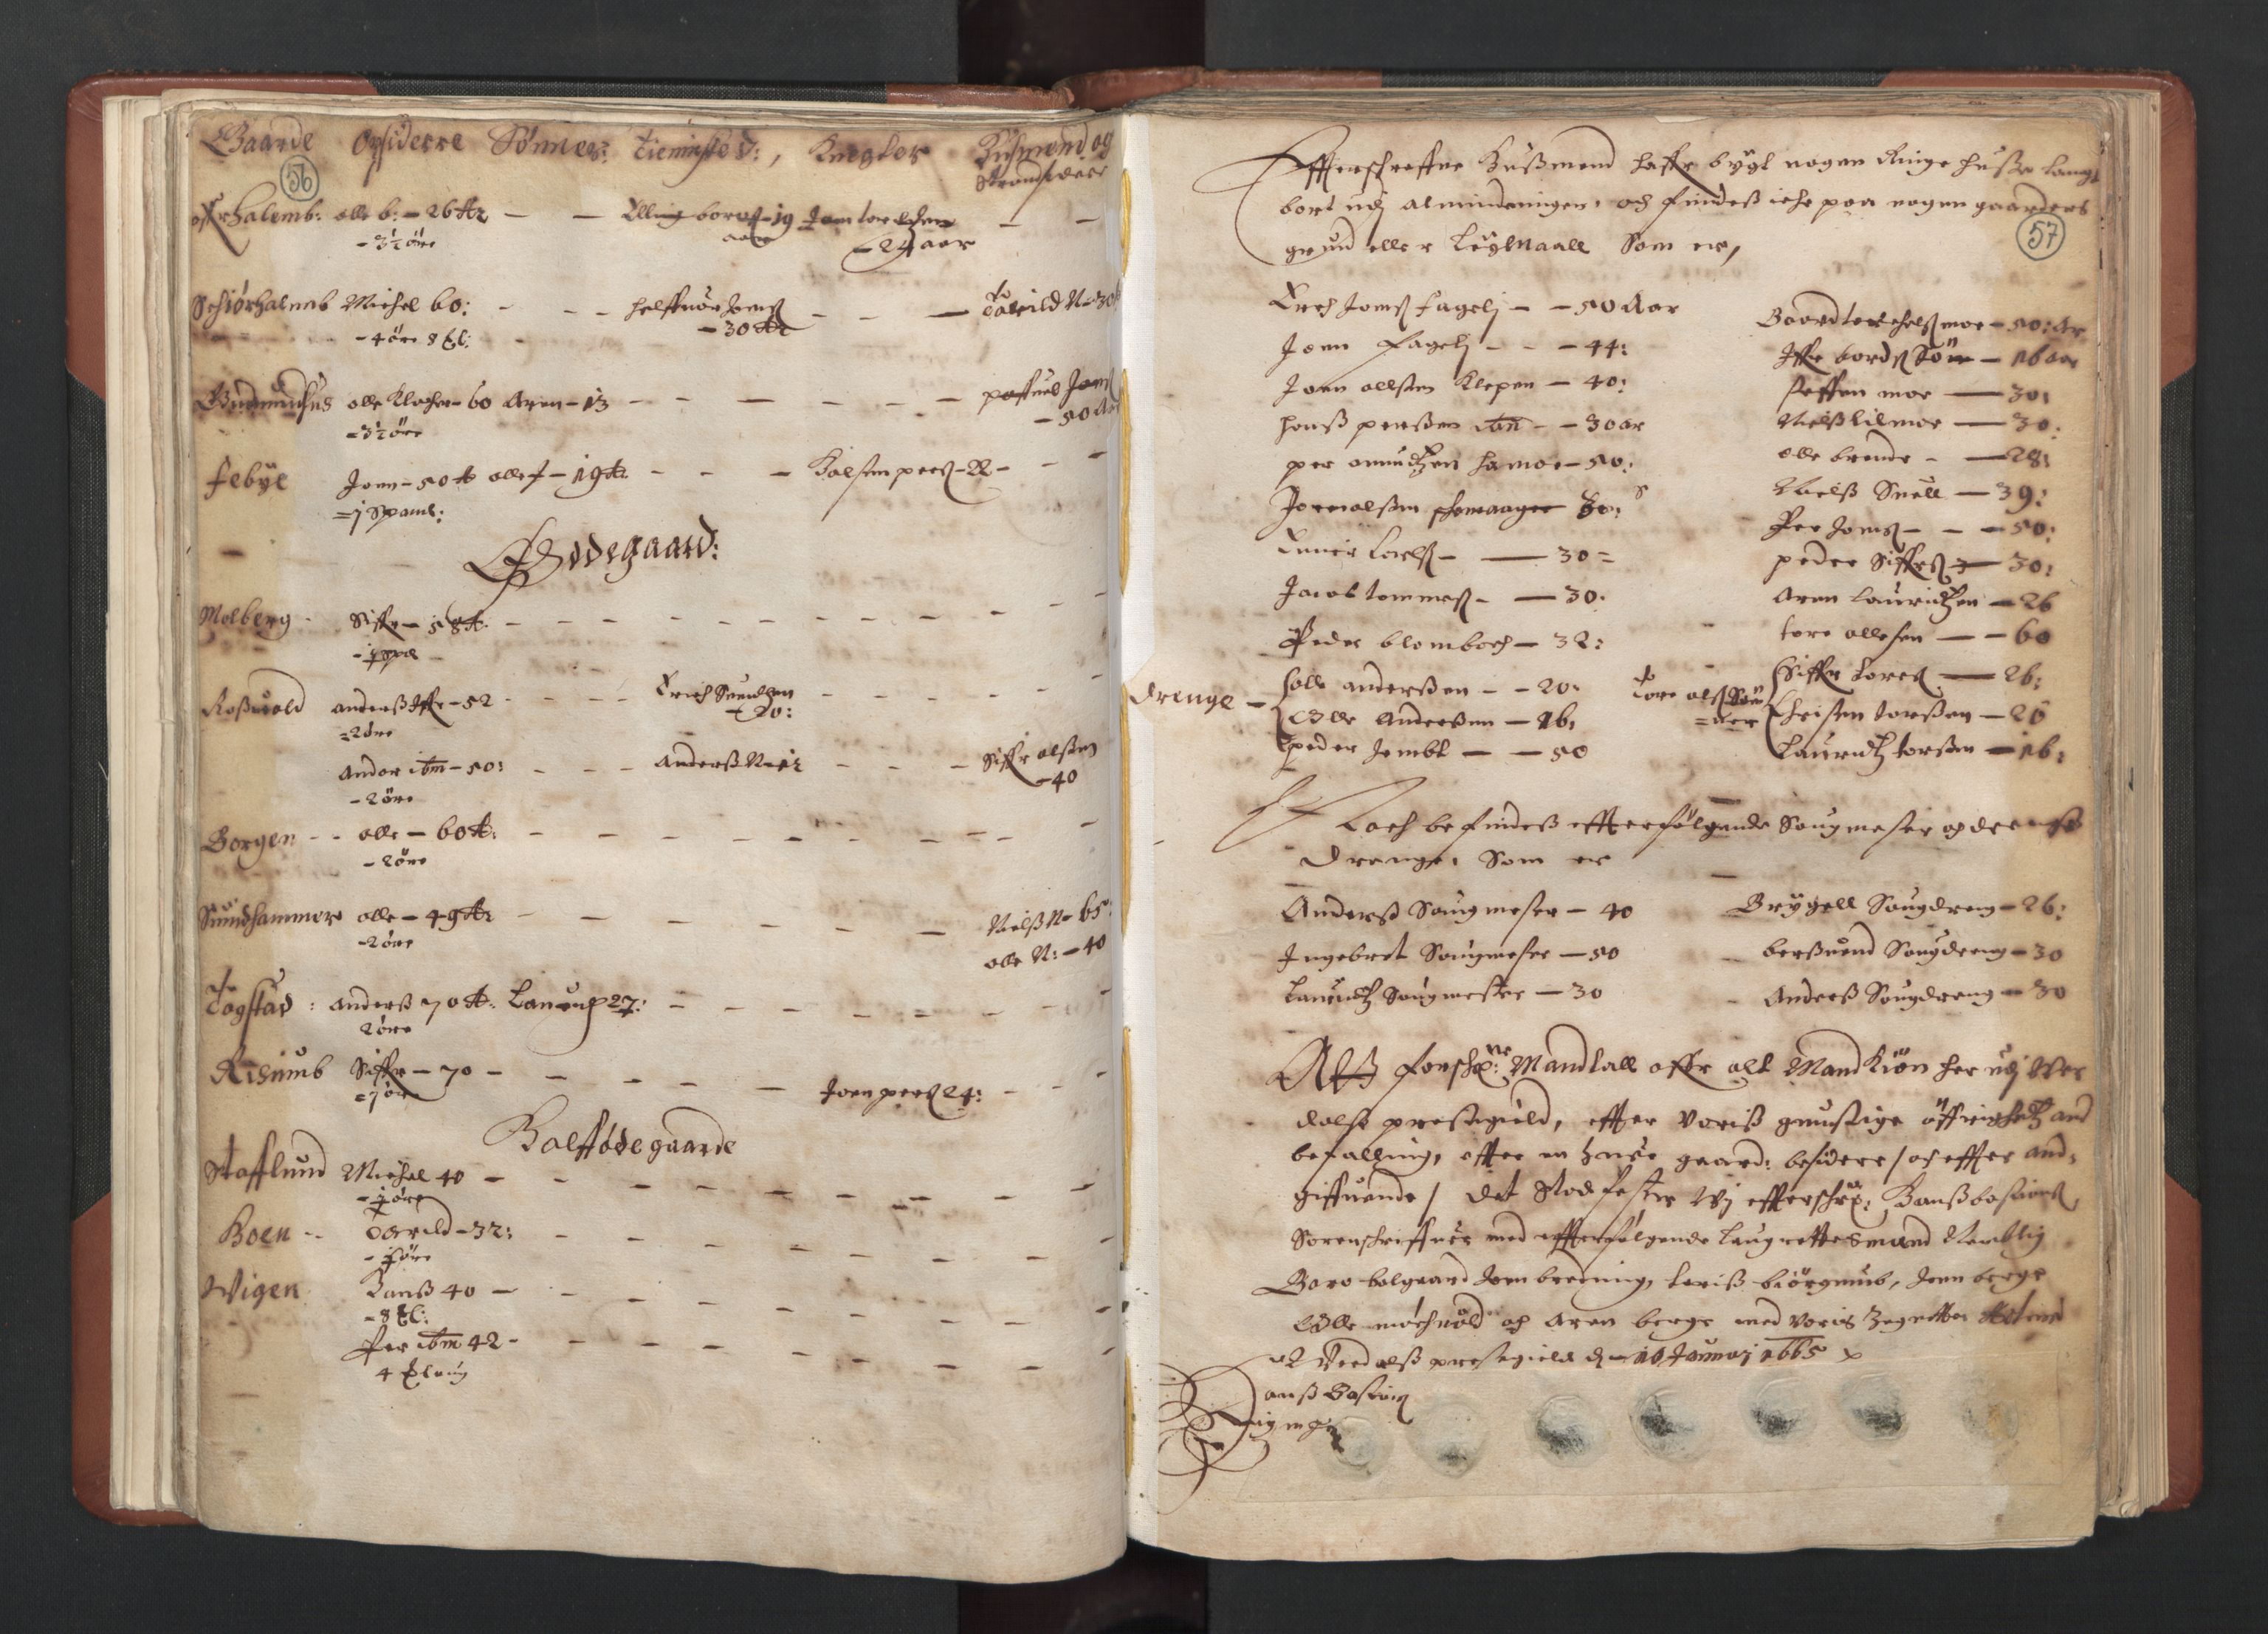 RA, Fogdenes og sorenskrivernes manntall 1664-1666, nr. 19: Fosen fogderi, Inderøy fogderi, Selbu fogderi, Namdal fogderi og Stjørdal fogderi, 1664-1665, s. 56-57